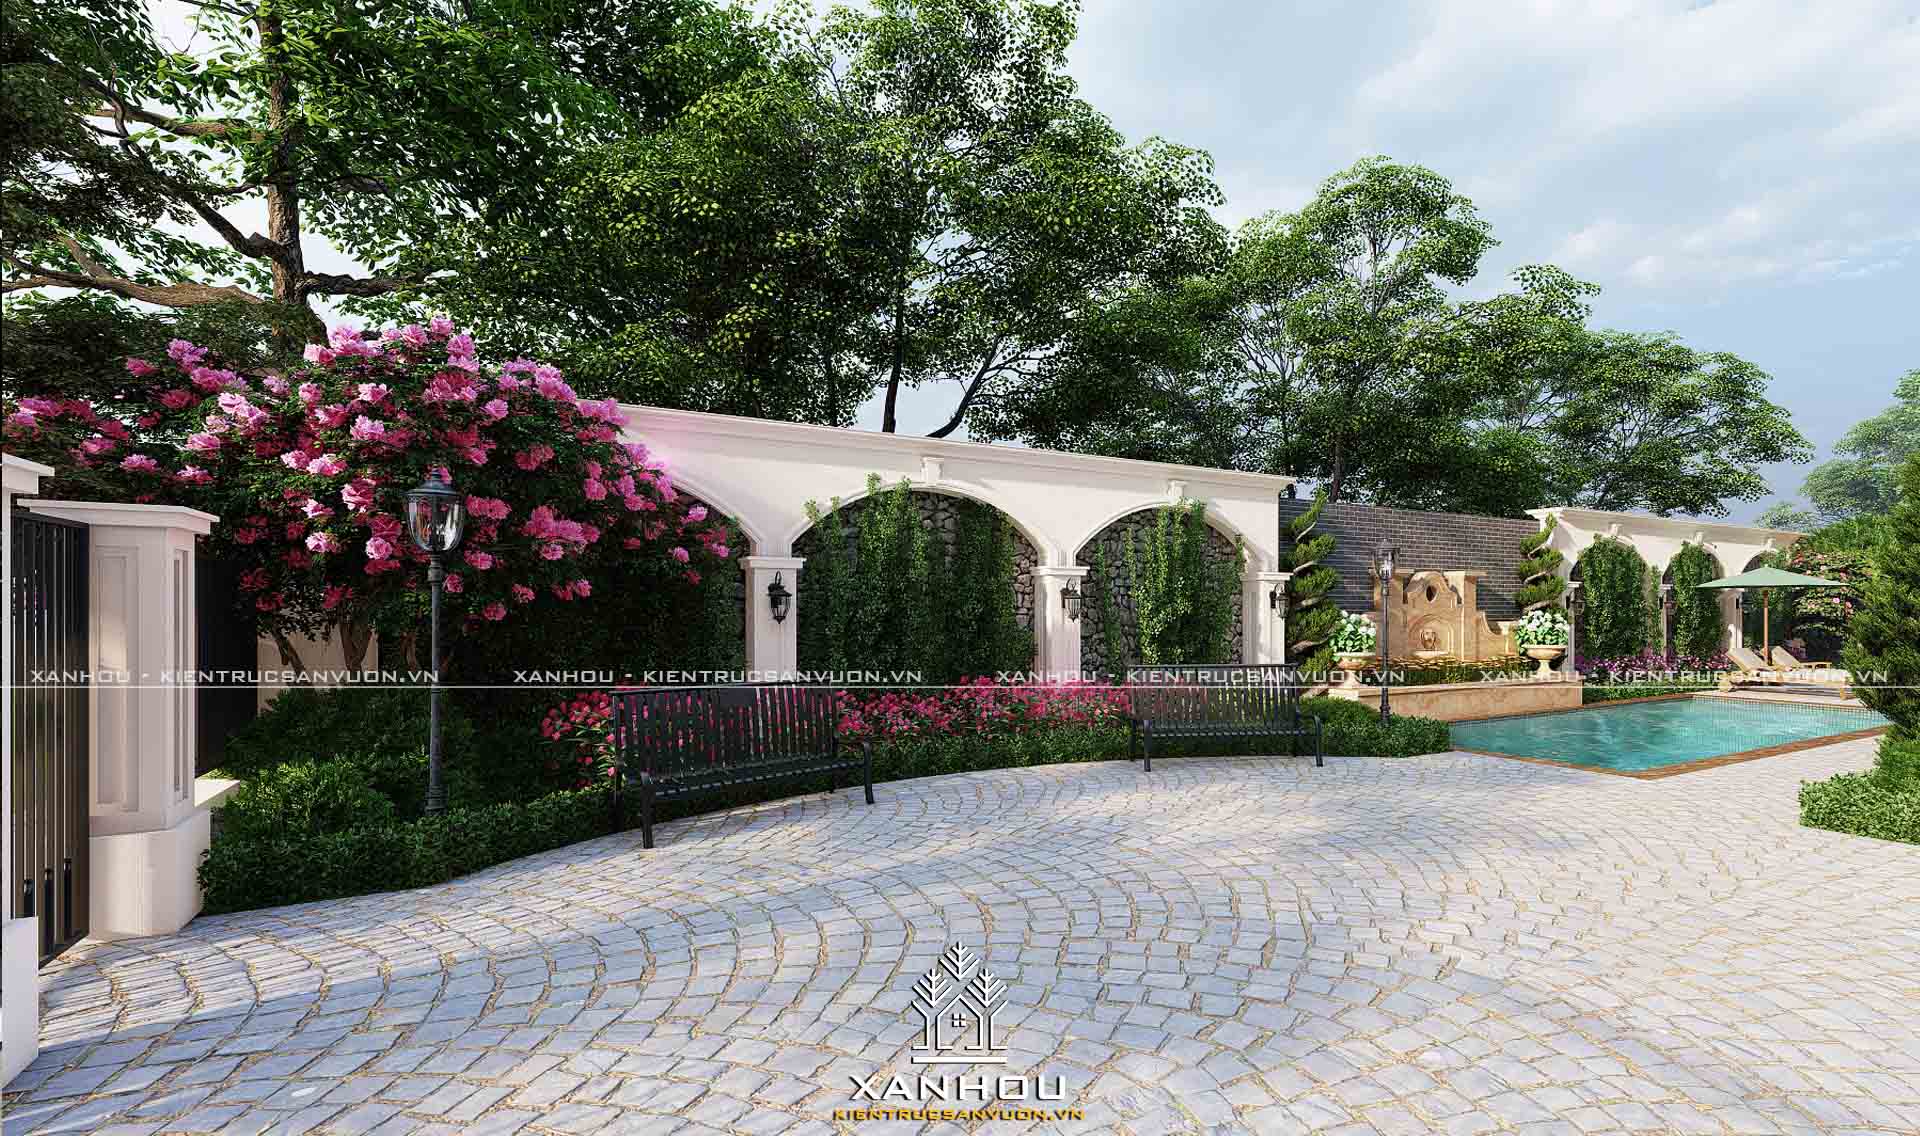 Top 99 mẫu thiết kế sân vườn đẹp hiện đại đơn giản dễ thi công [2022] - Sân vườn Xanhou 19